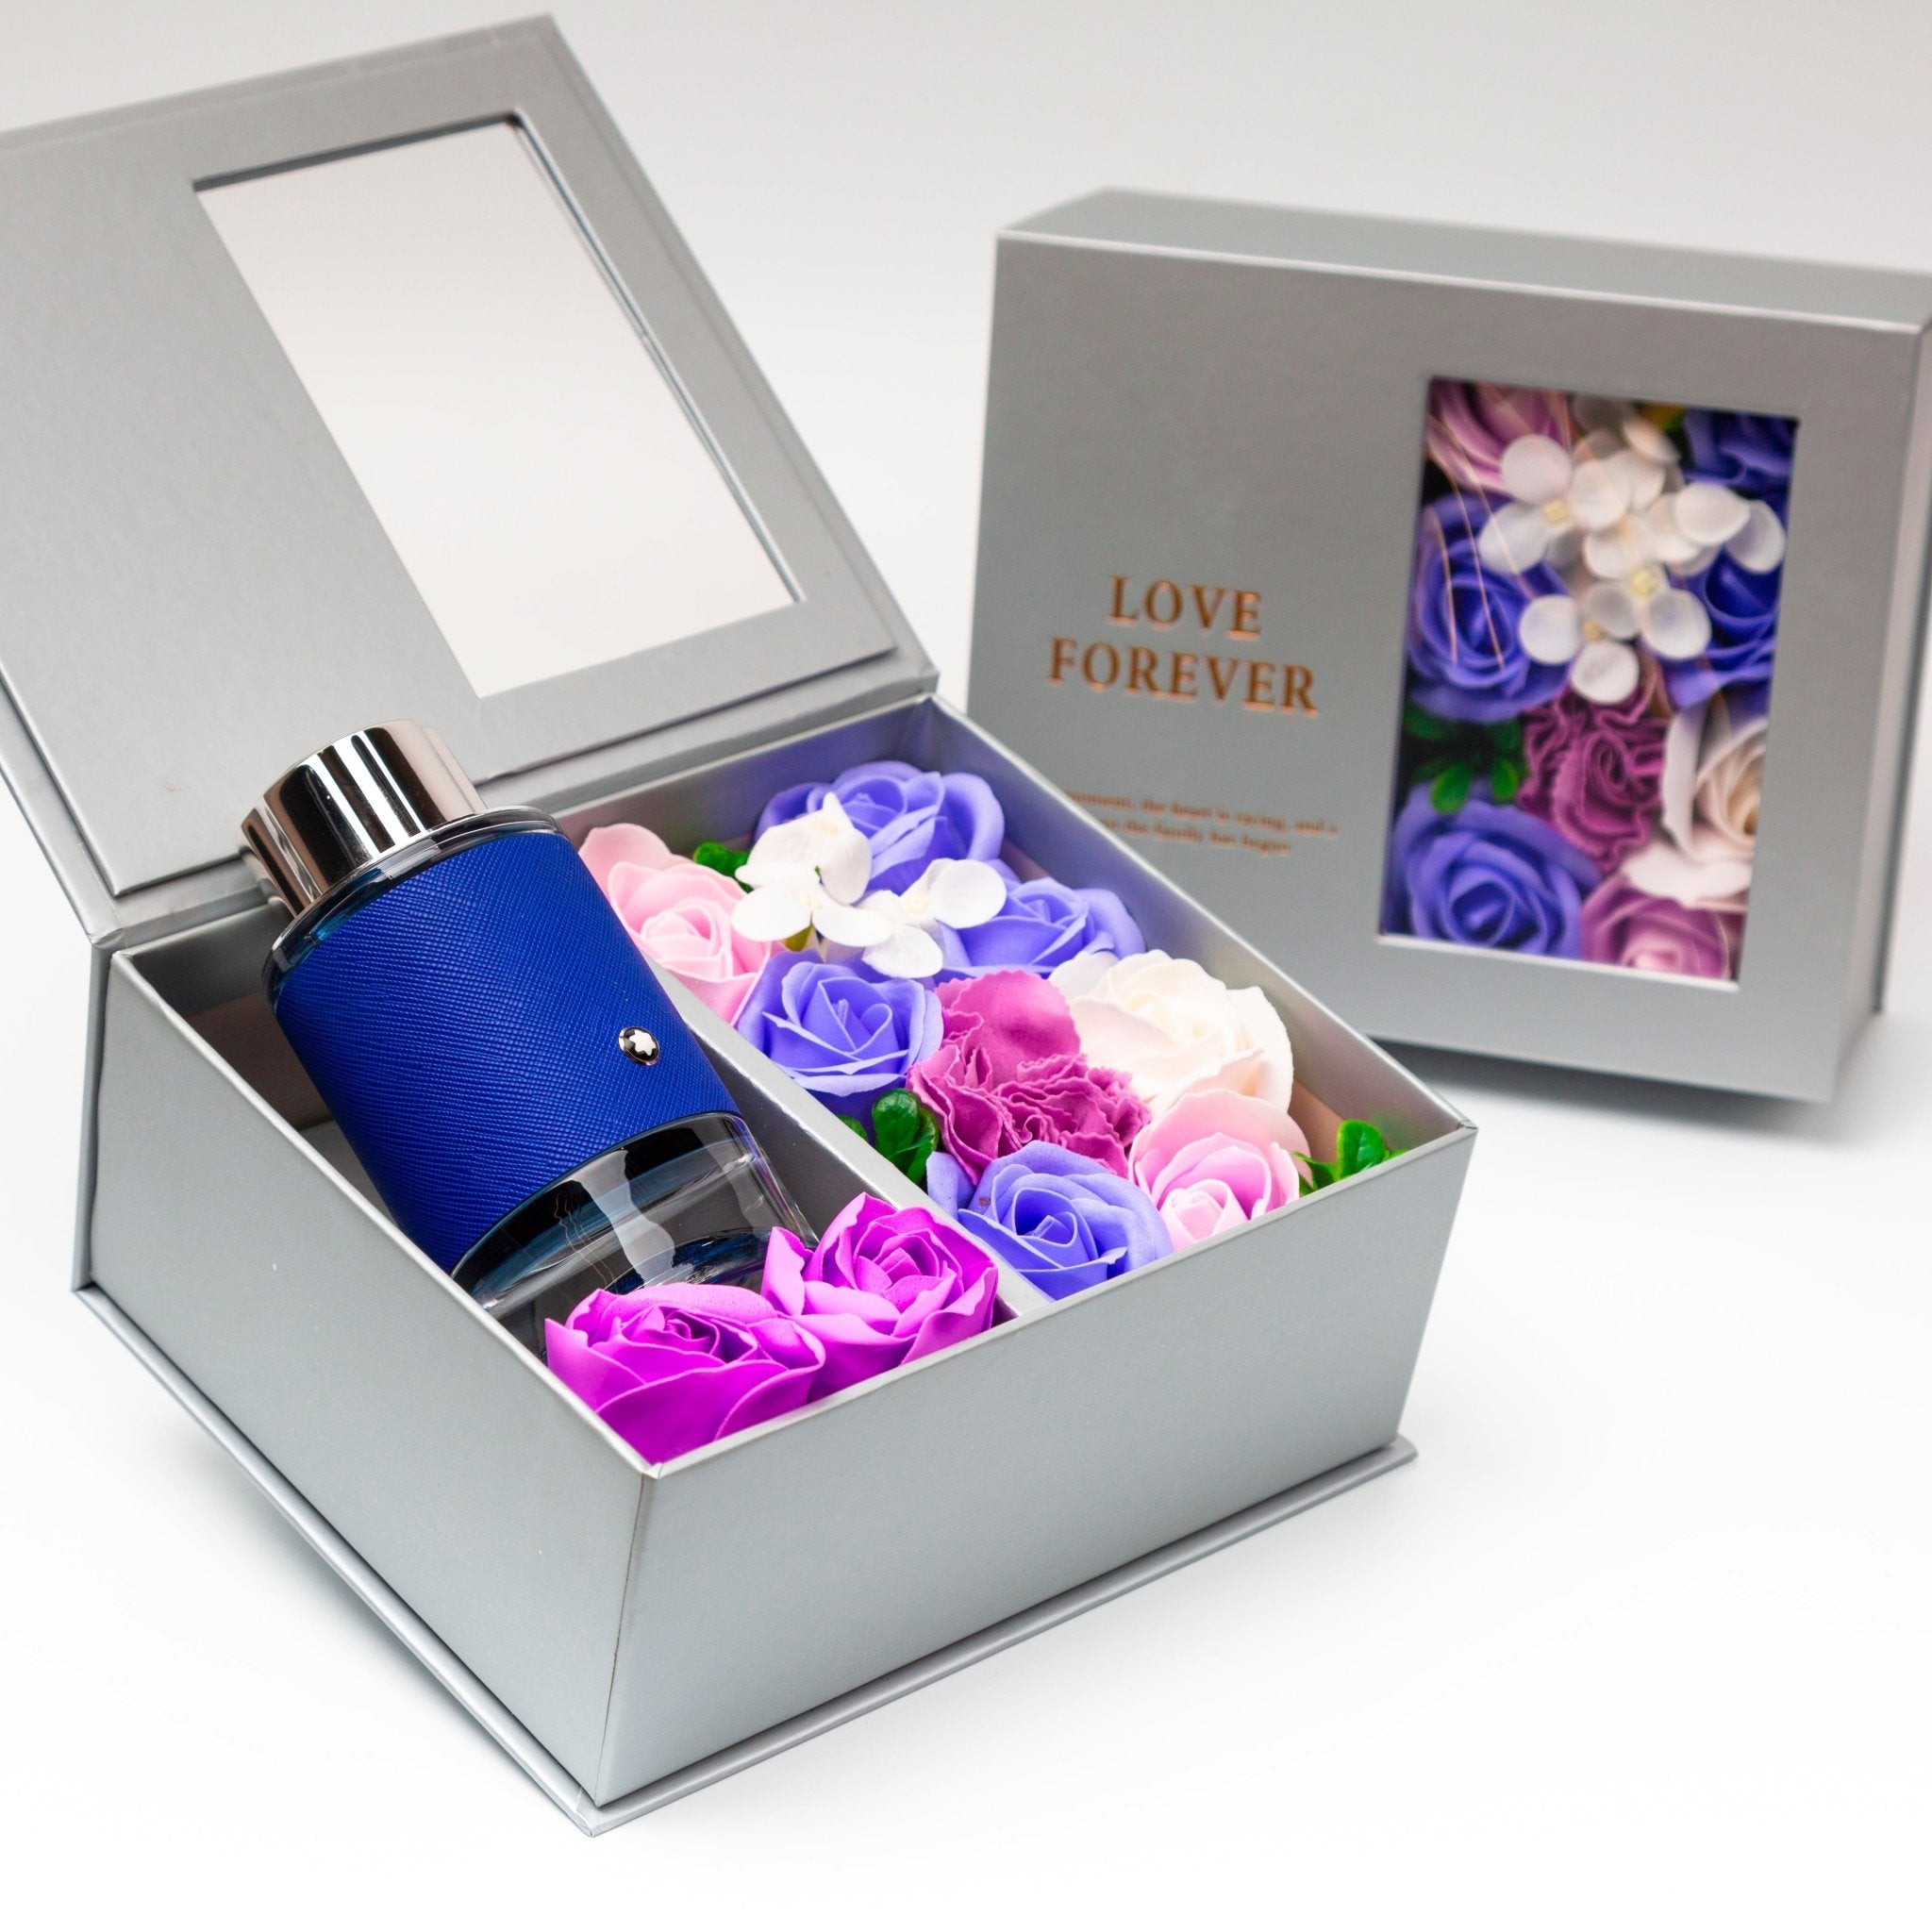 Flower Box - Perfume Gift For Men 7 - #shoFlower Box - Perfume Gift For Men 7p_name#Flower Box - Perfume Gift For Men 7Gift Boxes & TinsTakreemTakreem.joMenPerfumeFlower Box - Perfume Gift For Men 7 - Takreem.jo